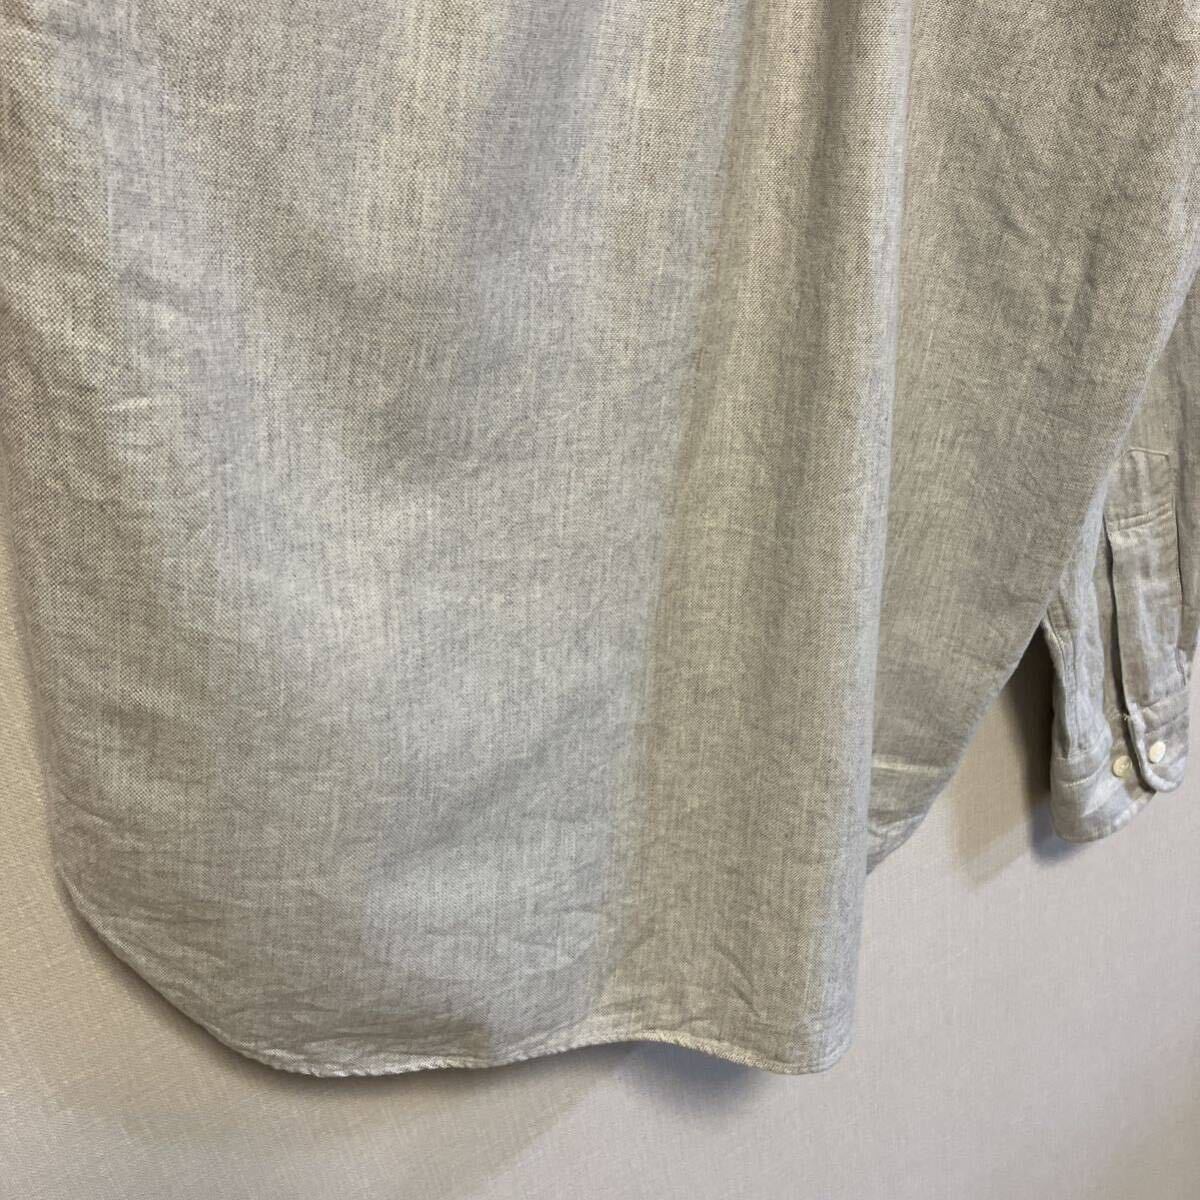  Haversack Haversack / рубашка с длинным рукавом / раунд цвет / серый / хлопок / сделано в Японии / размер L